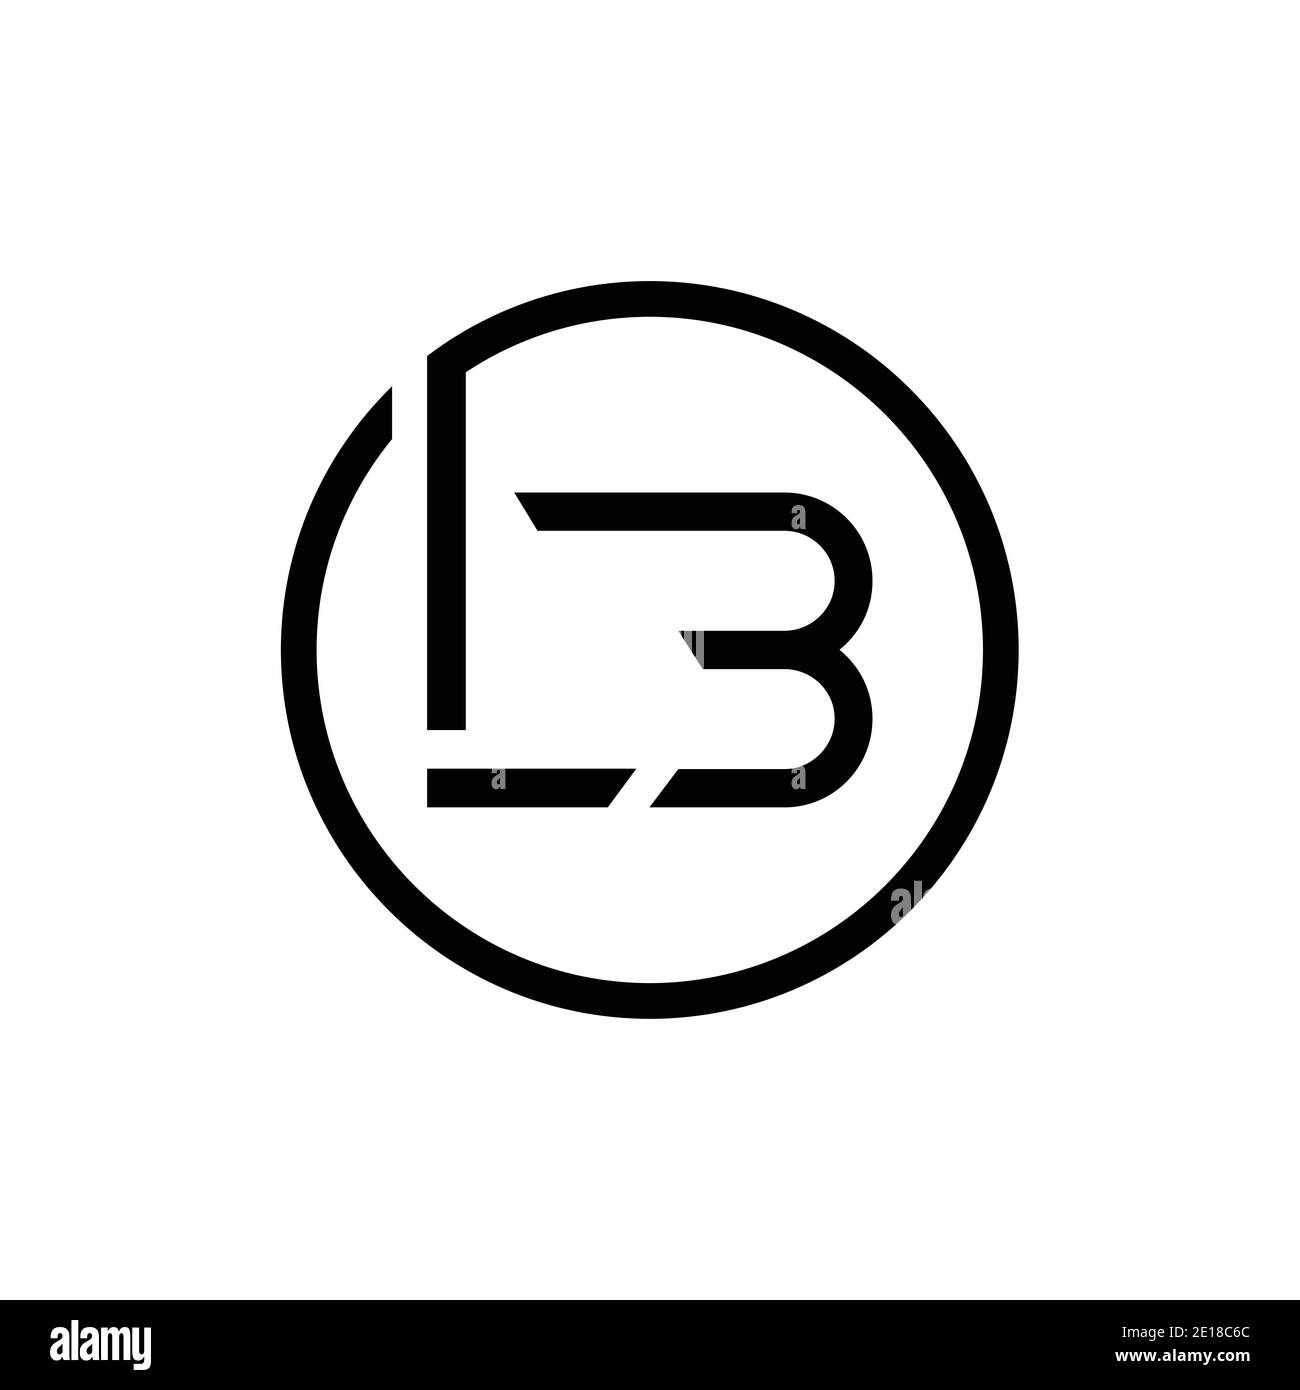 Lb Logo PNG Vectors Free Download